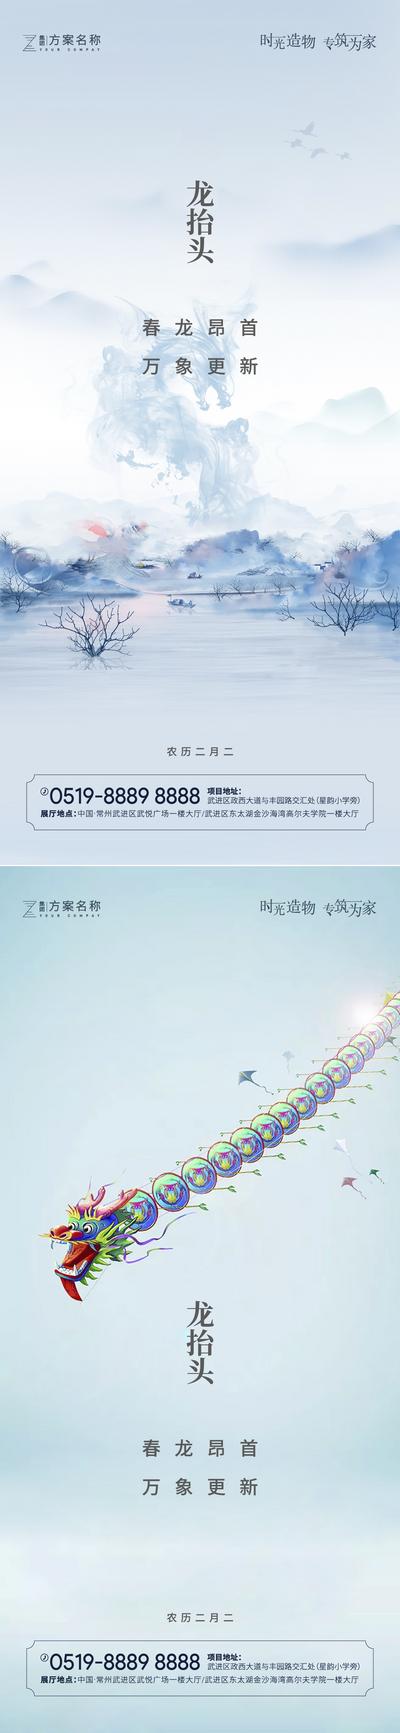 南门网 海报 房地产 中国传统节日 龙抬头 二月二 简约 系列